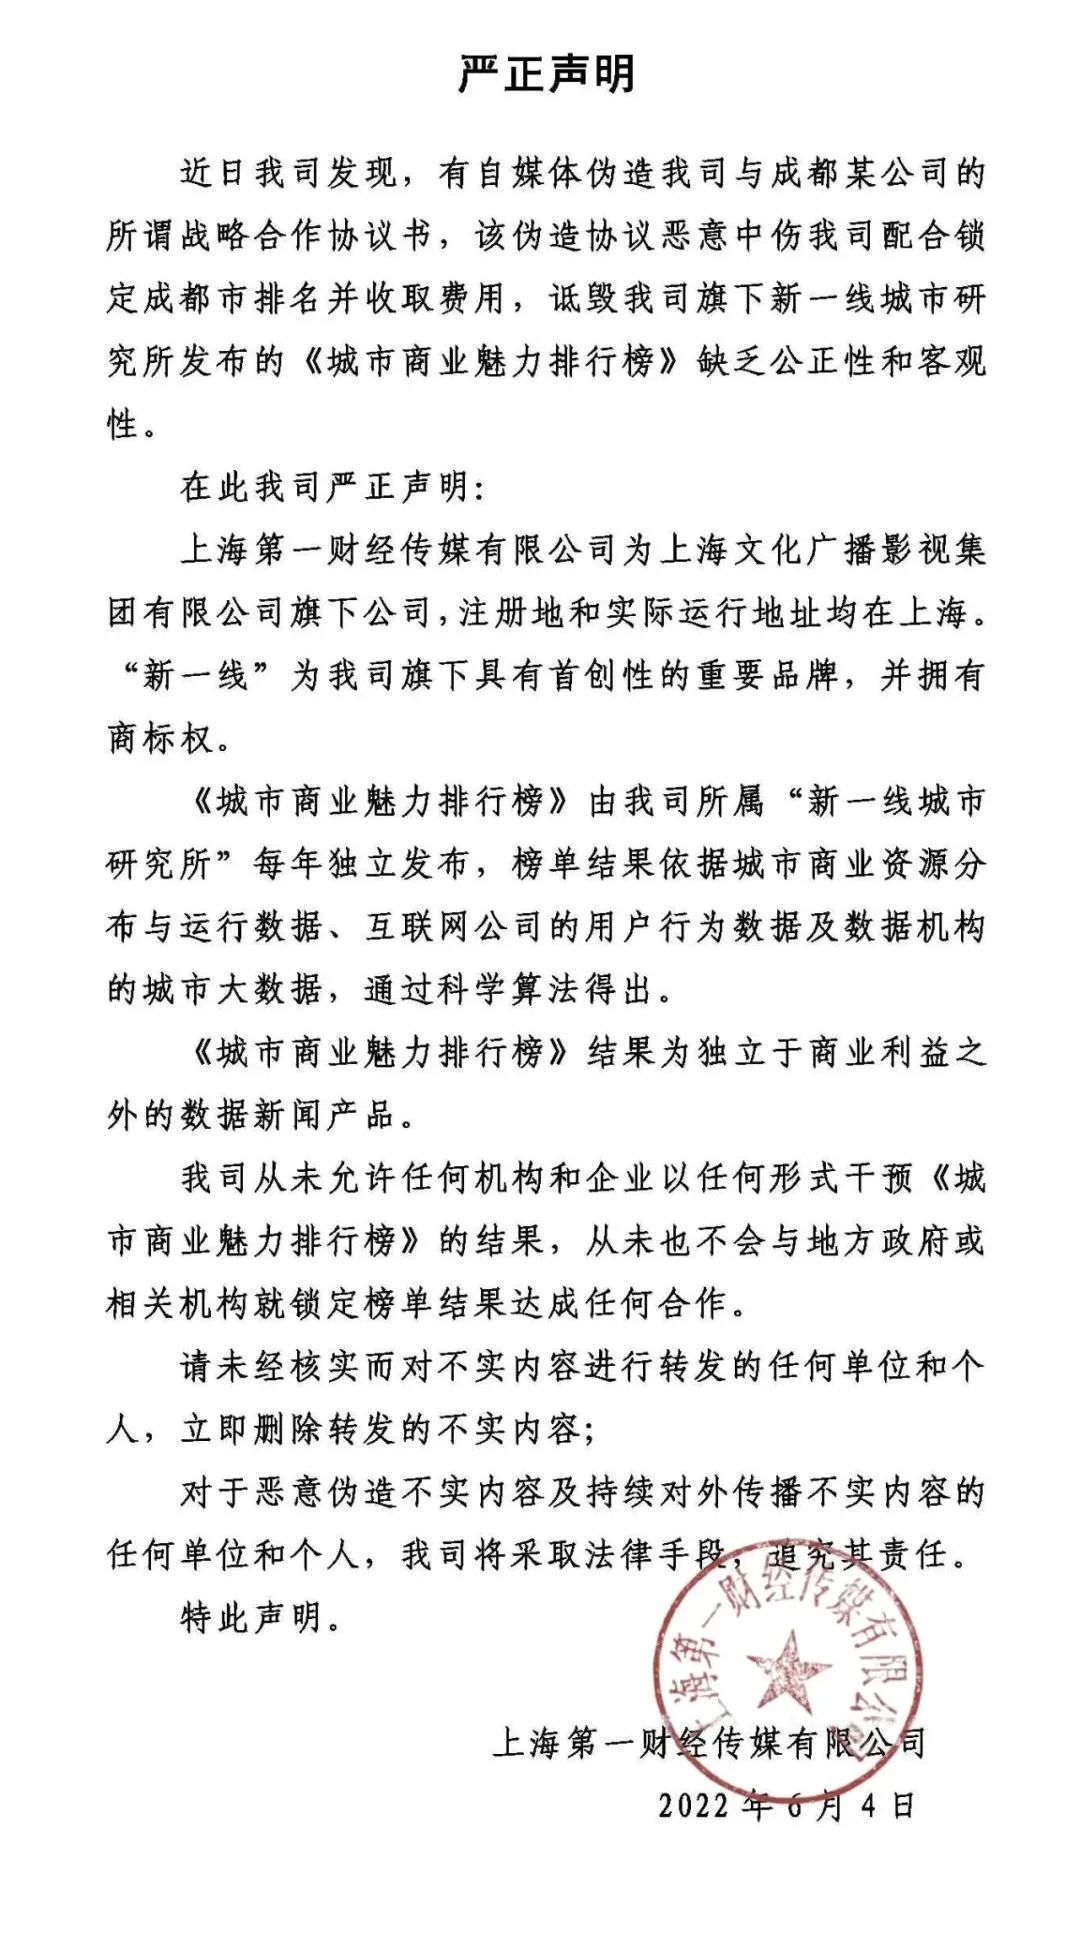 上海第一财经传媒有限公司严正声明